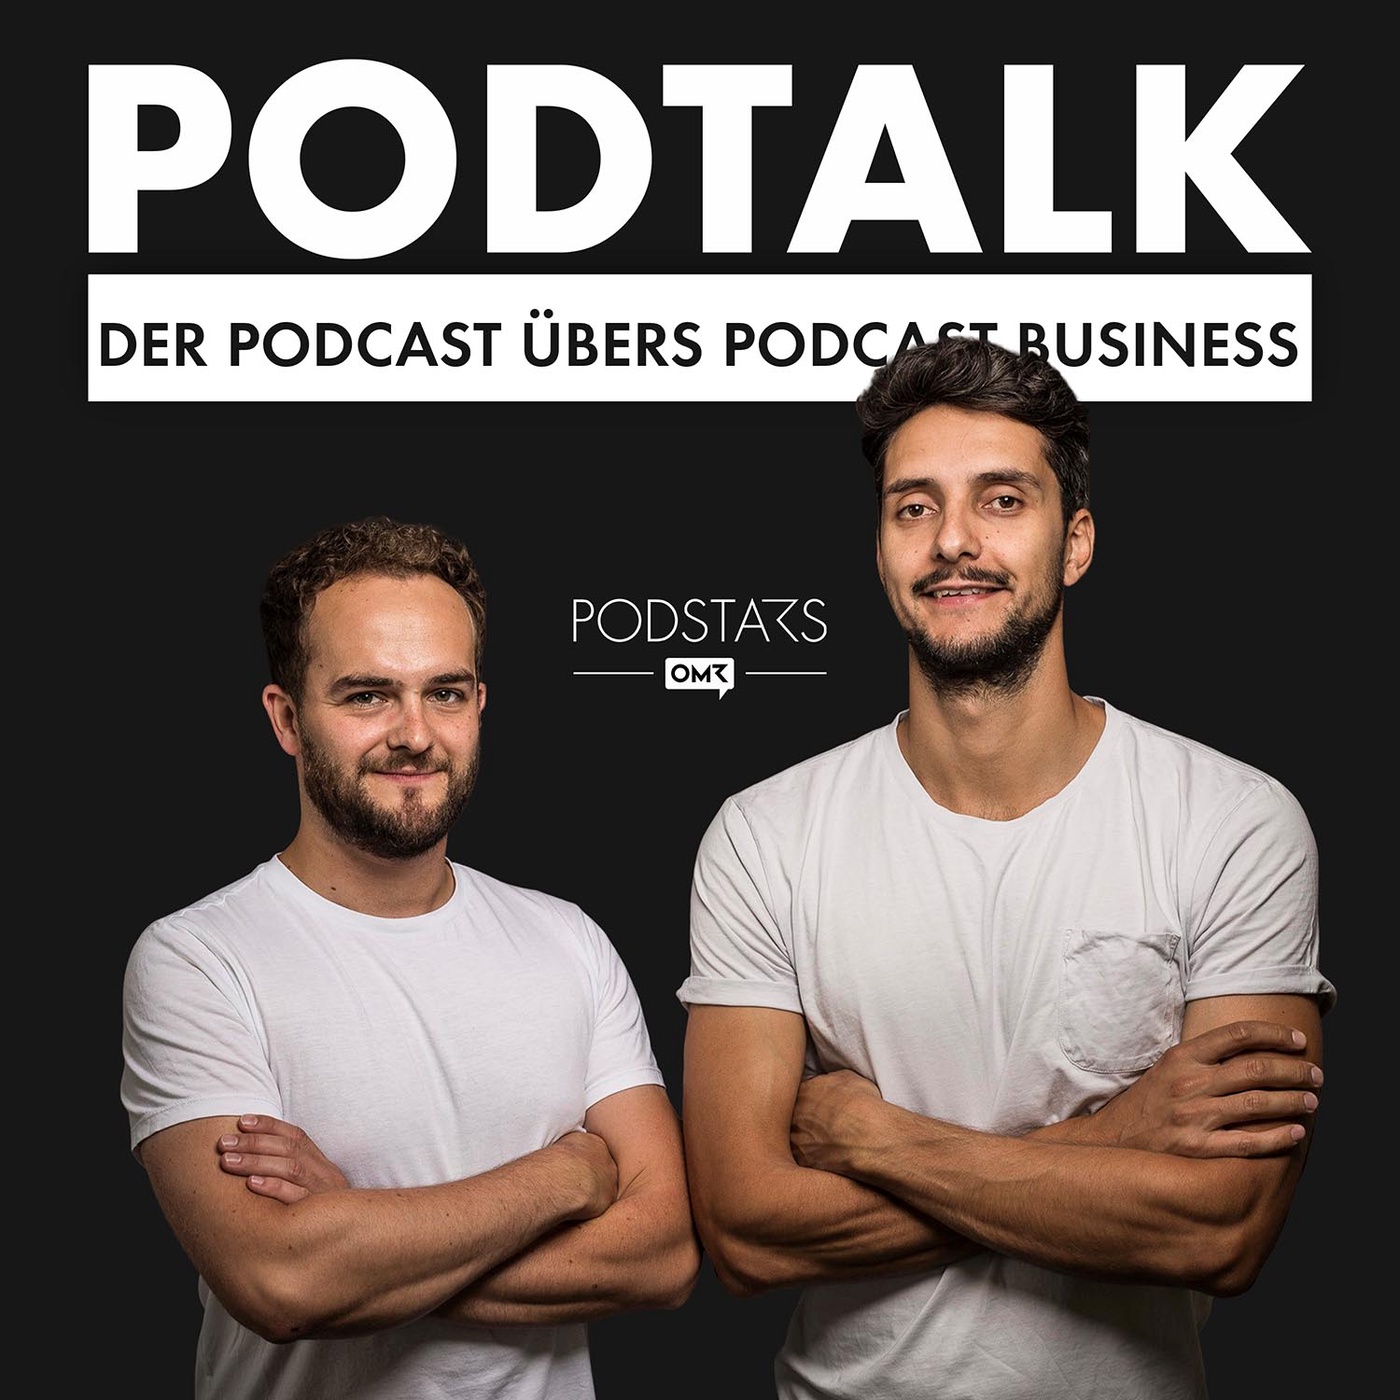 PodTalk #44: Podcasts, die (Abteilungs-)Grenzen durchbrechen - mit David Krause, Head of Podcast der dpa